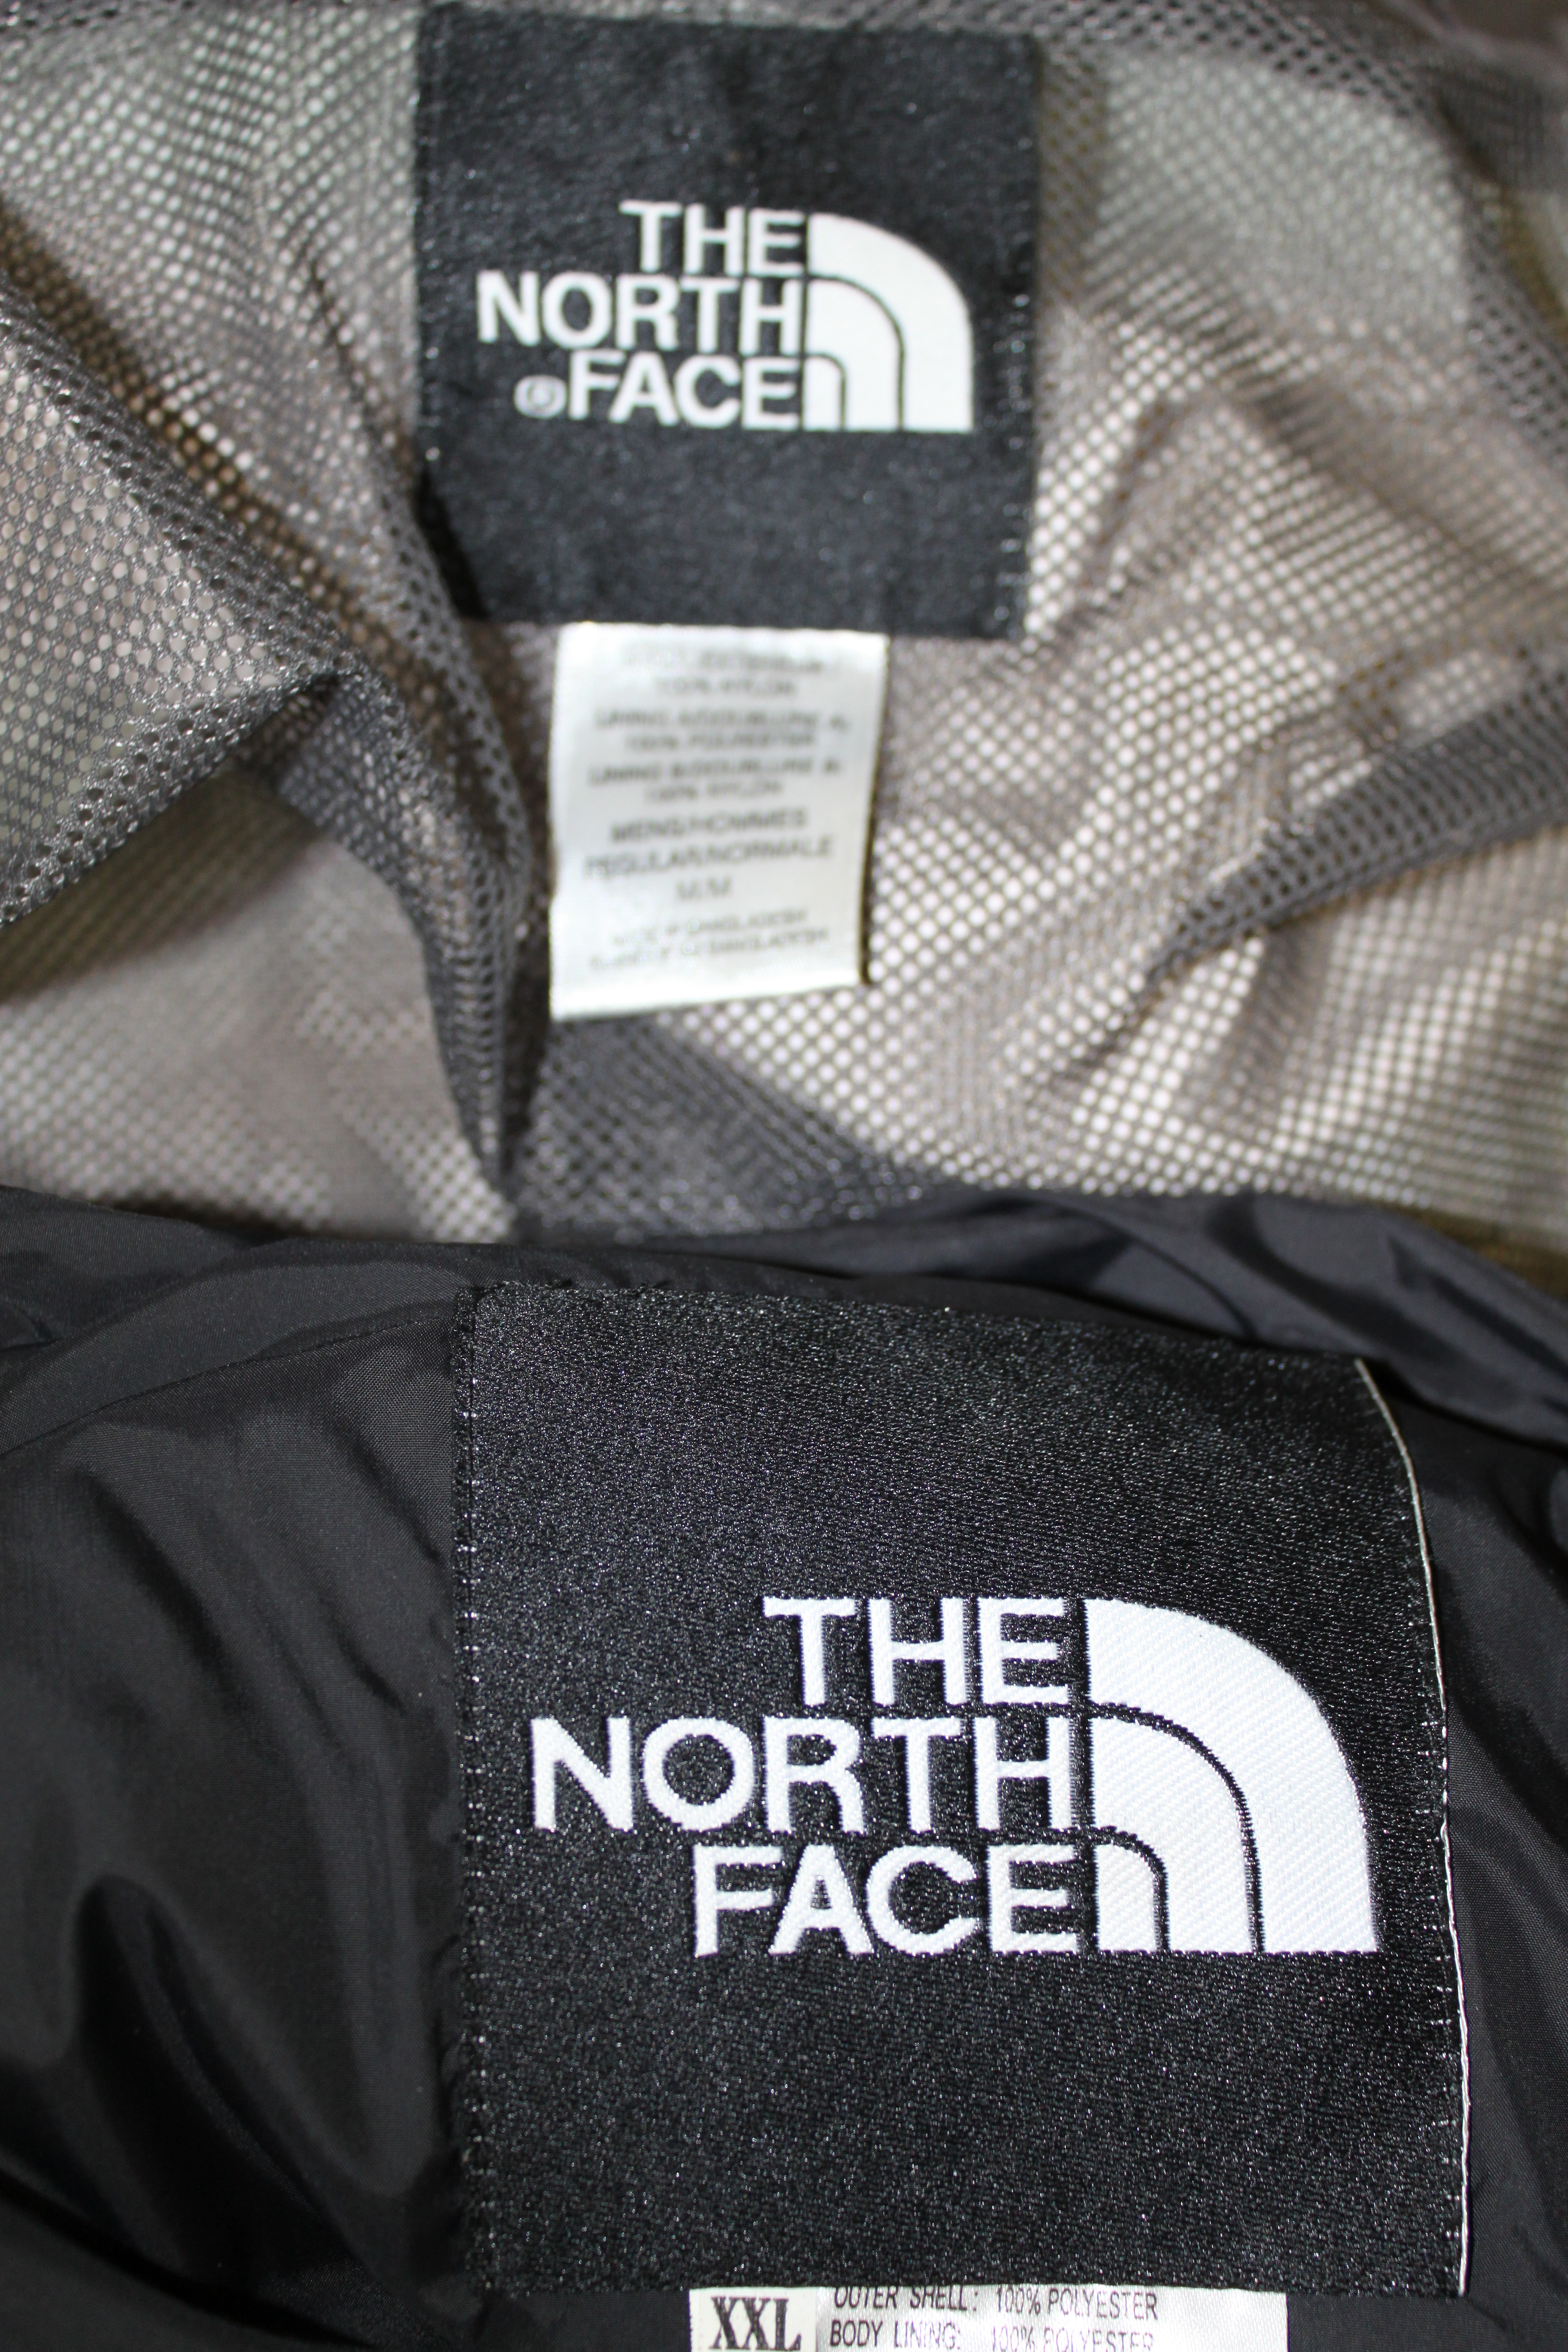 fake north face logo